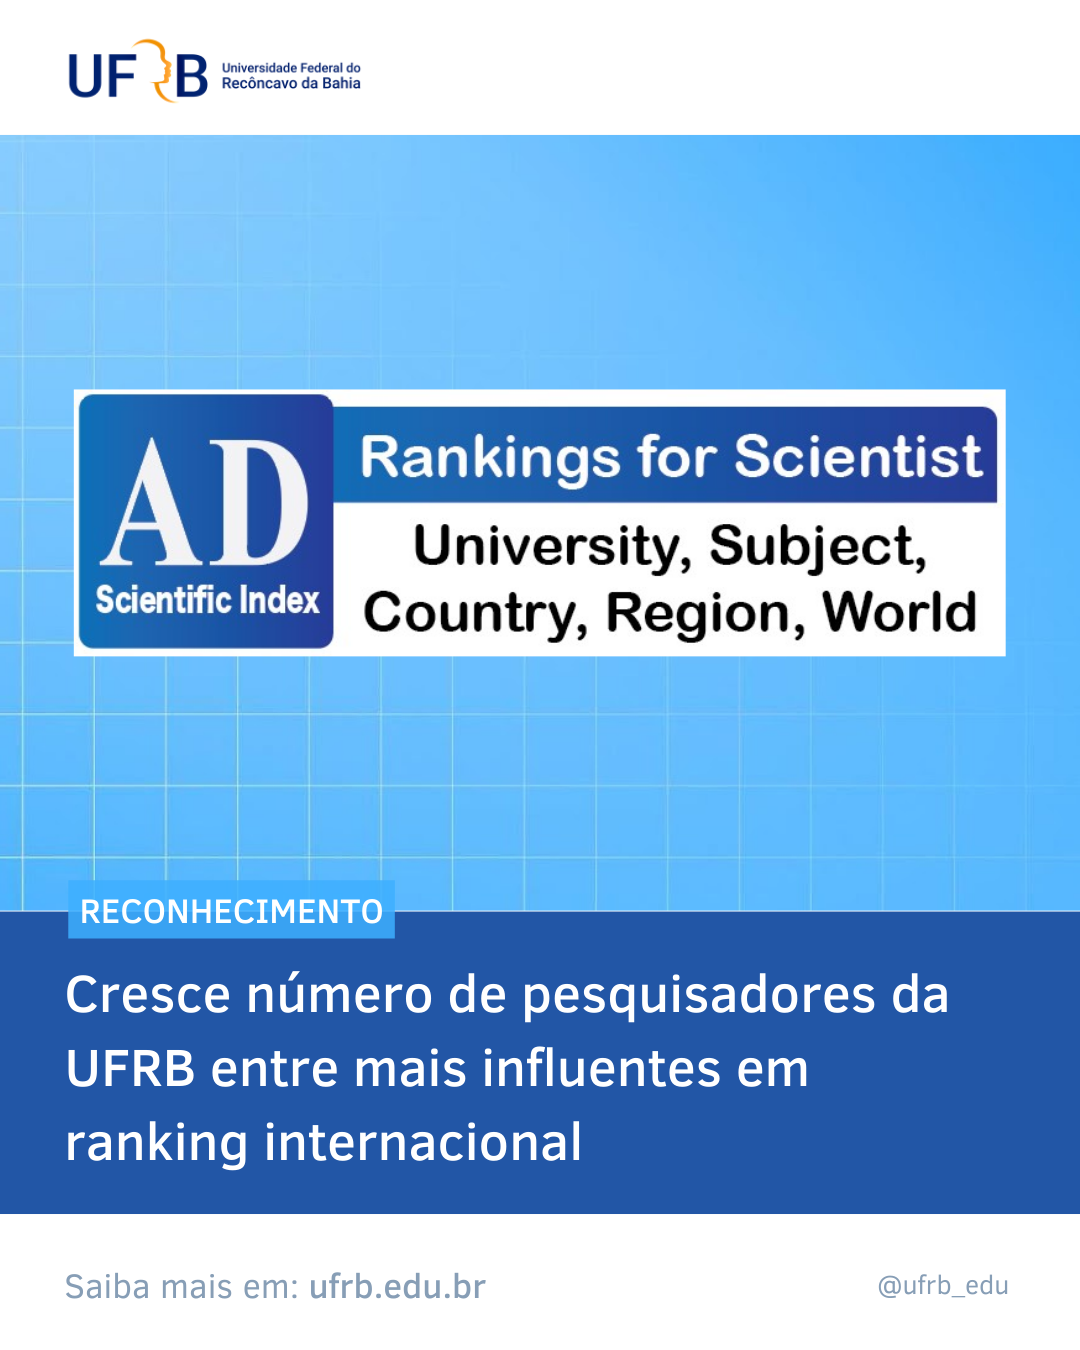 Descrição da imagem: Logomarca da AD Scientific Index em fundo azul claro com  linhas horizontais e verticais na cor branca formando quadrados. Abaixo a legenda Cresce número de pesquisadores da UFRB entre mais influentes em ranking internacional em fundo azul escuro.